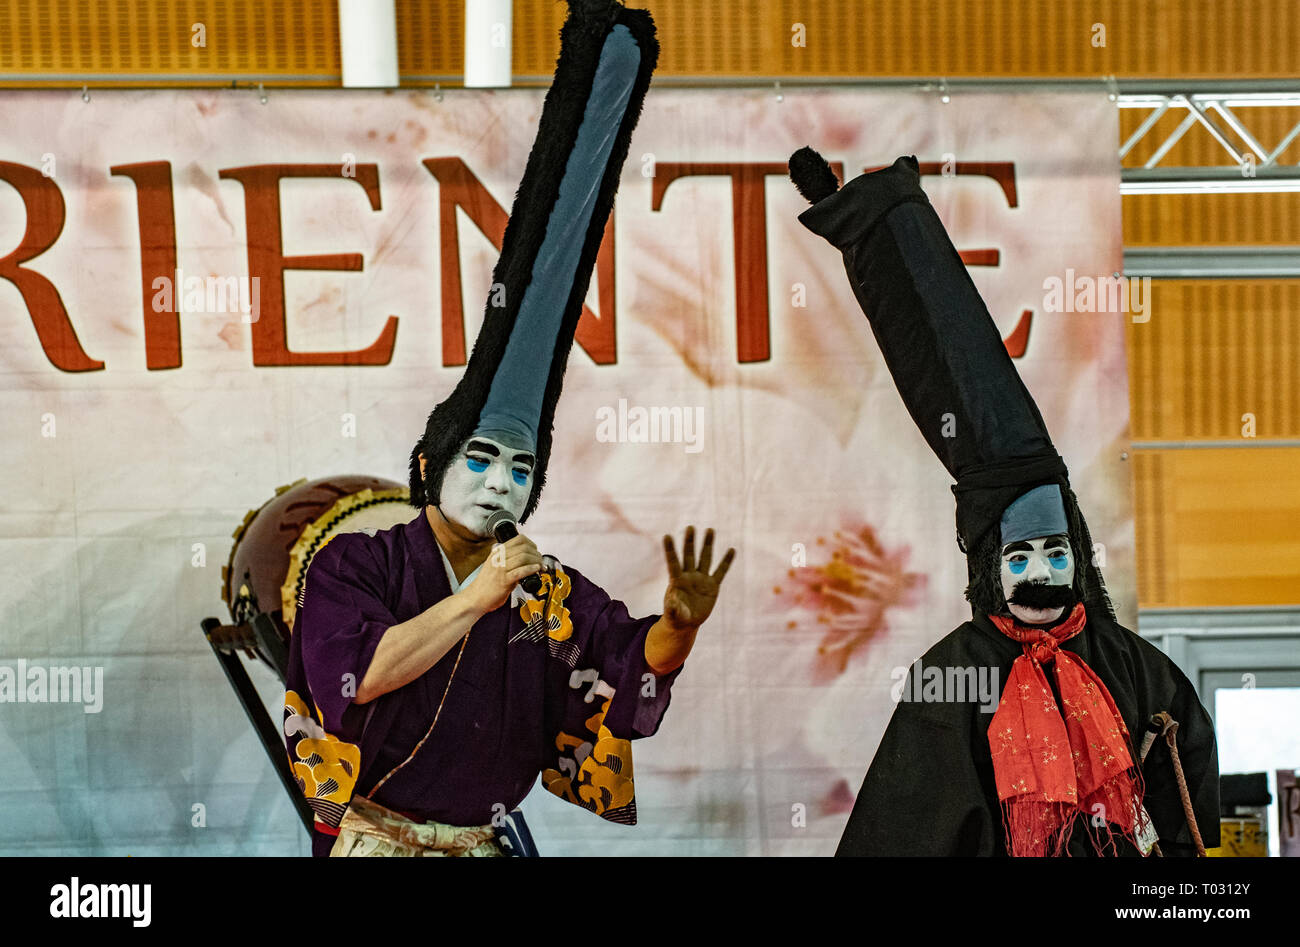 Festival de l'Orient -clowns japonais Crédit : Ojarus Realy Easy Star/Alamy Live News Banque D'Images